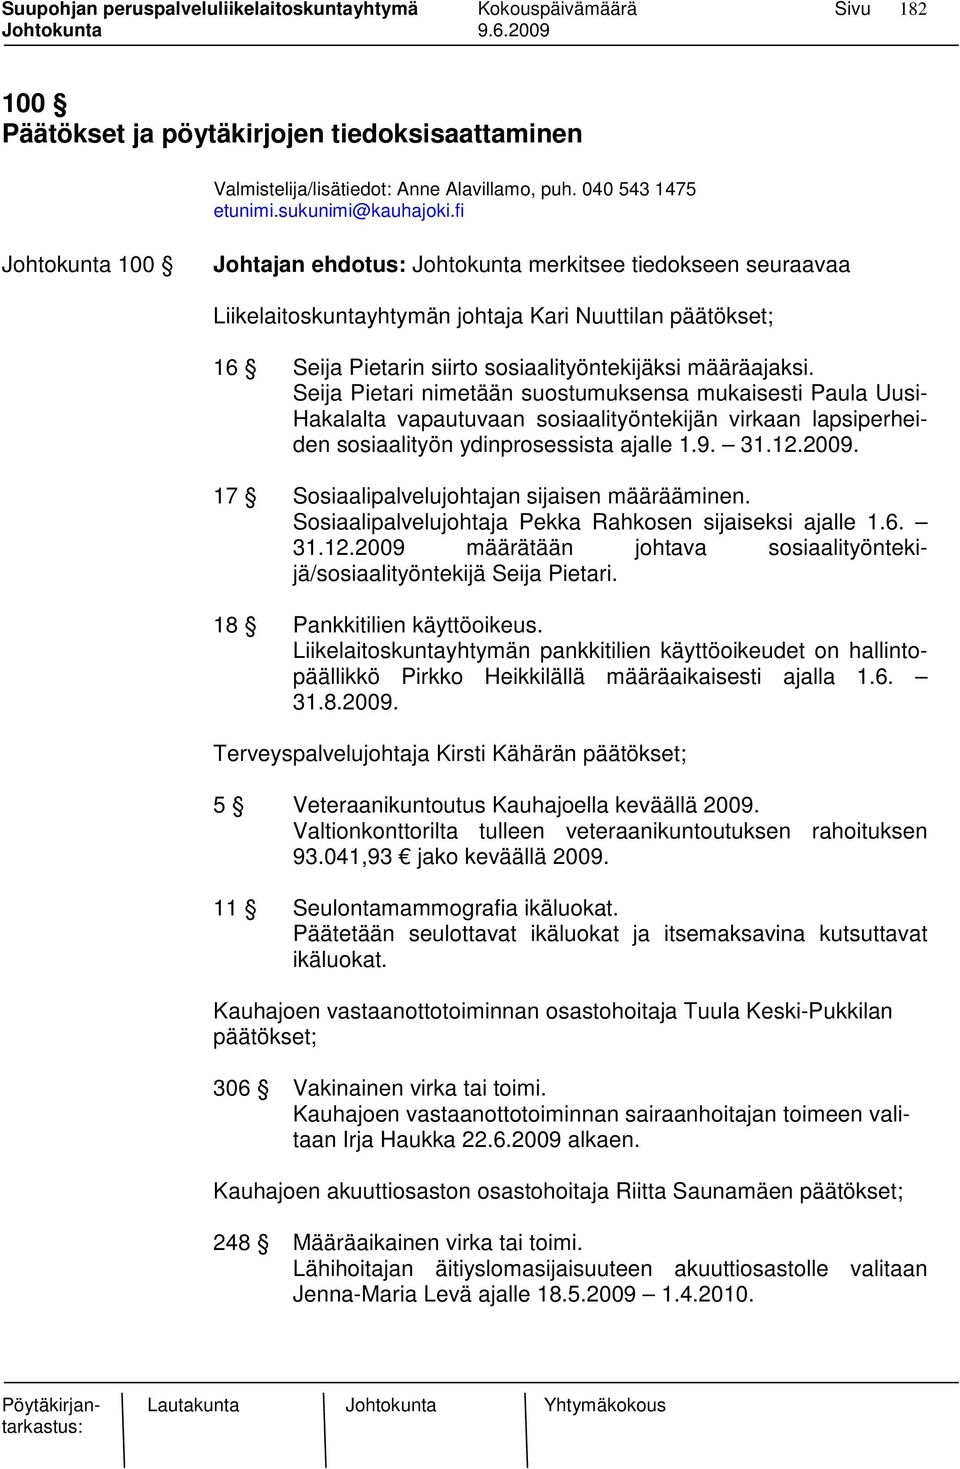 Seija Pietari nimetään suostumuksensa mukaisesti Paula Uusi- Hakalalta vapautuvaan sosiaalityöntekijän virkaan lapsiperheiden sosiaalityön ydinprosessista ajalle 1.9. 31.12.2009.